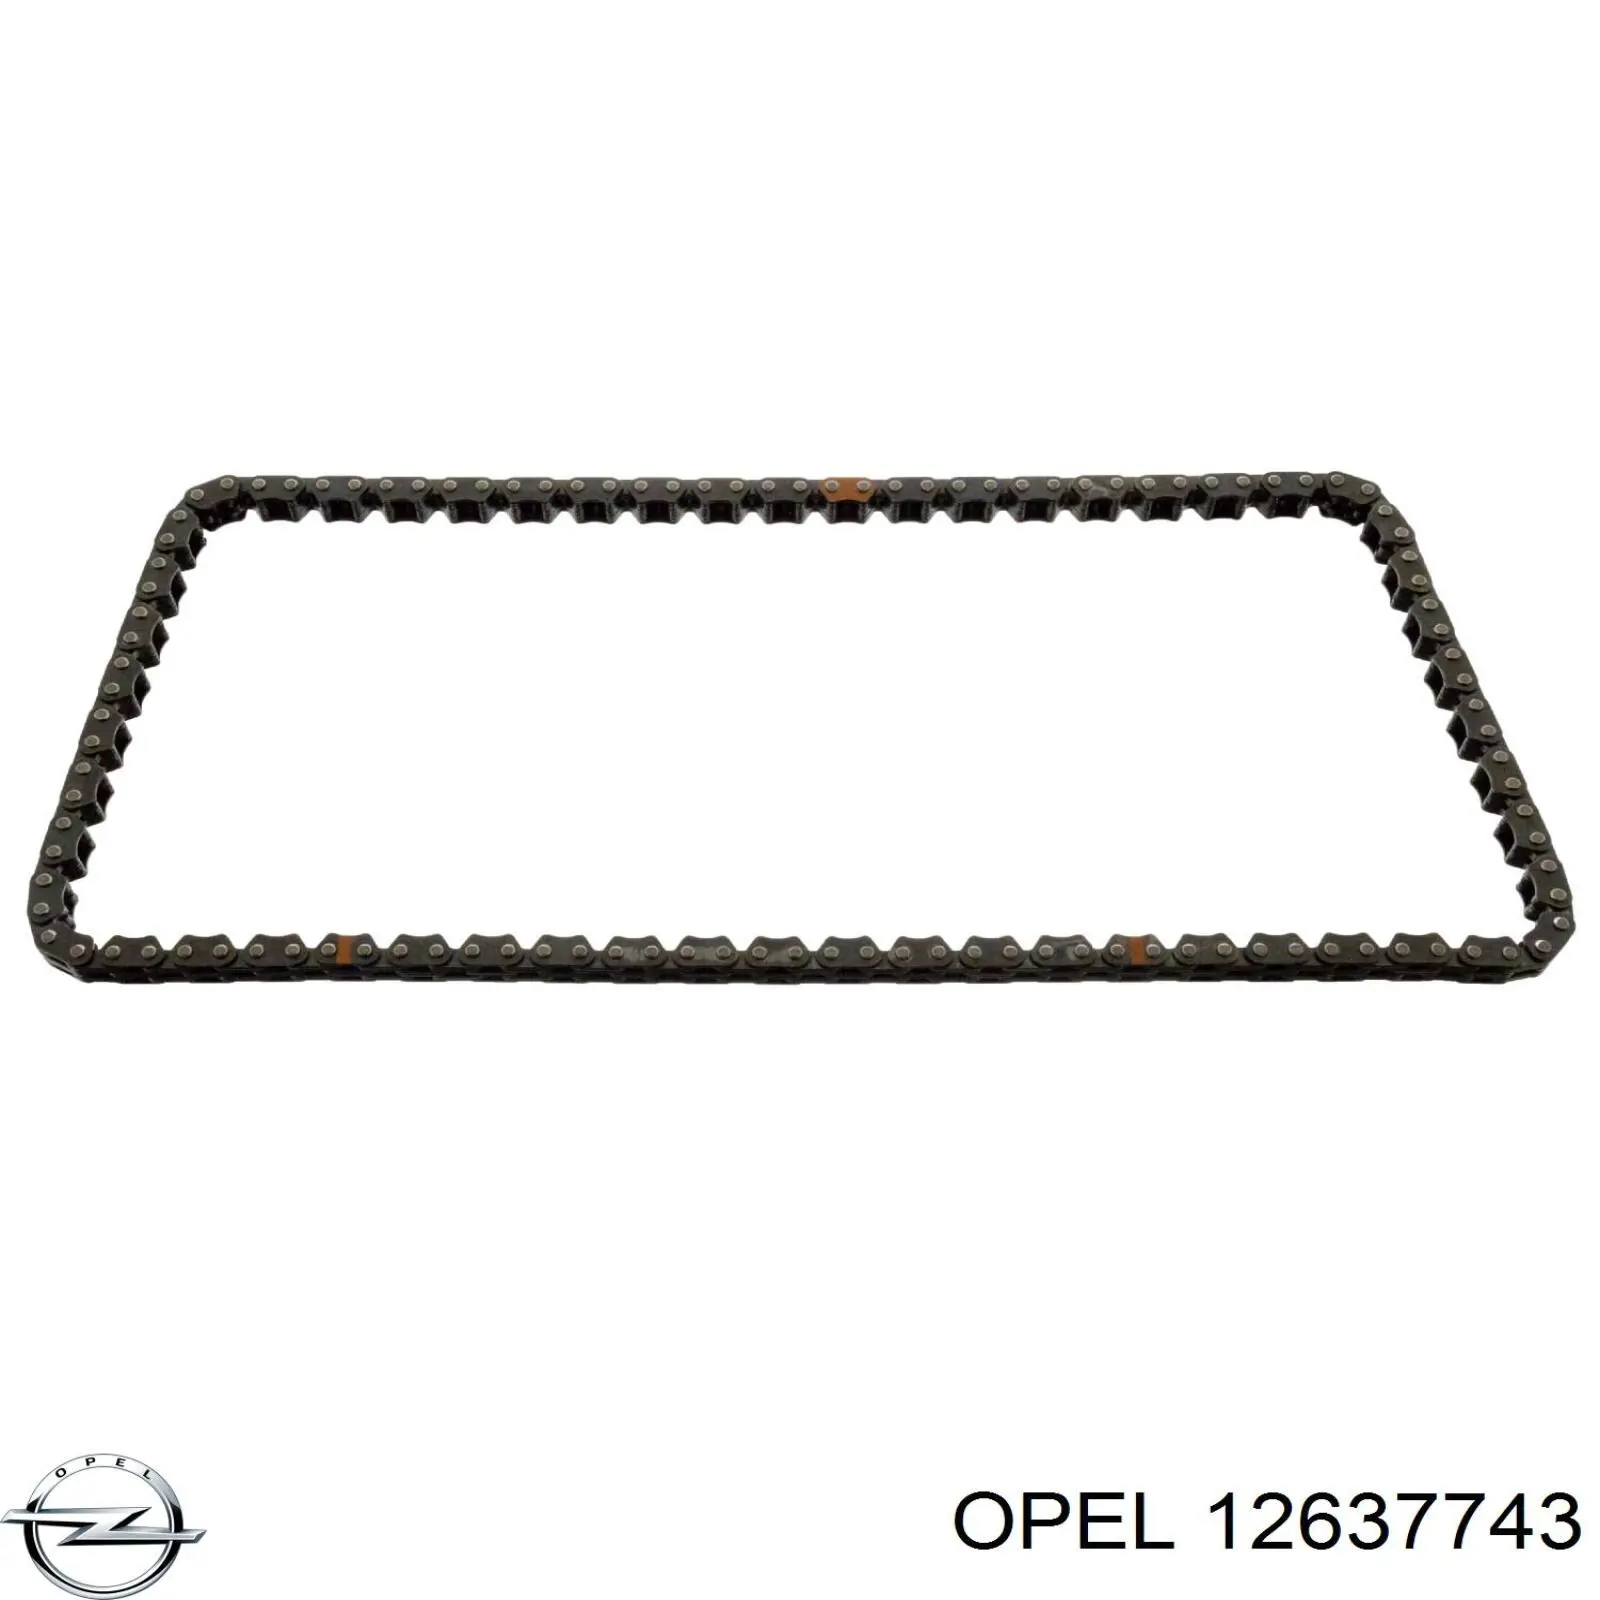 12637743 Opel цепь грм